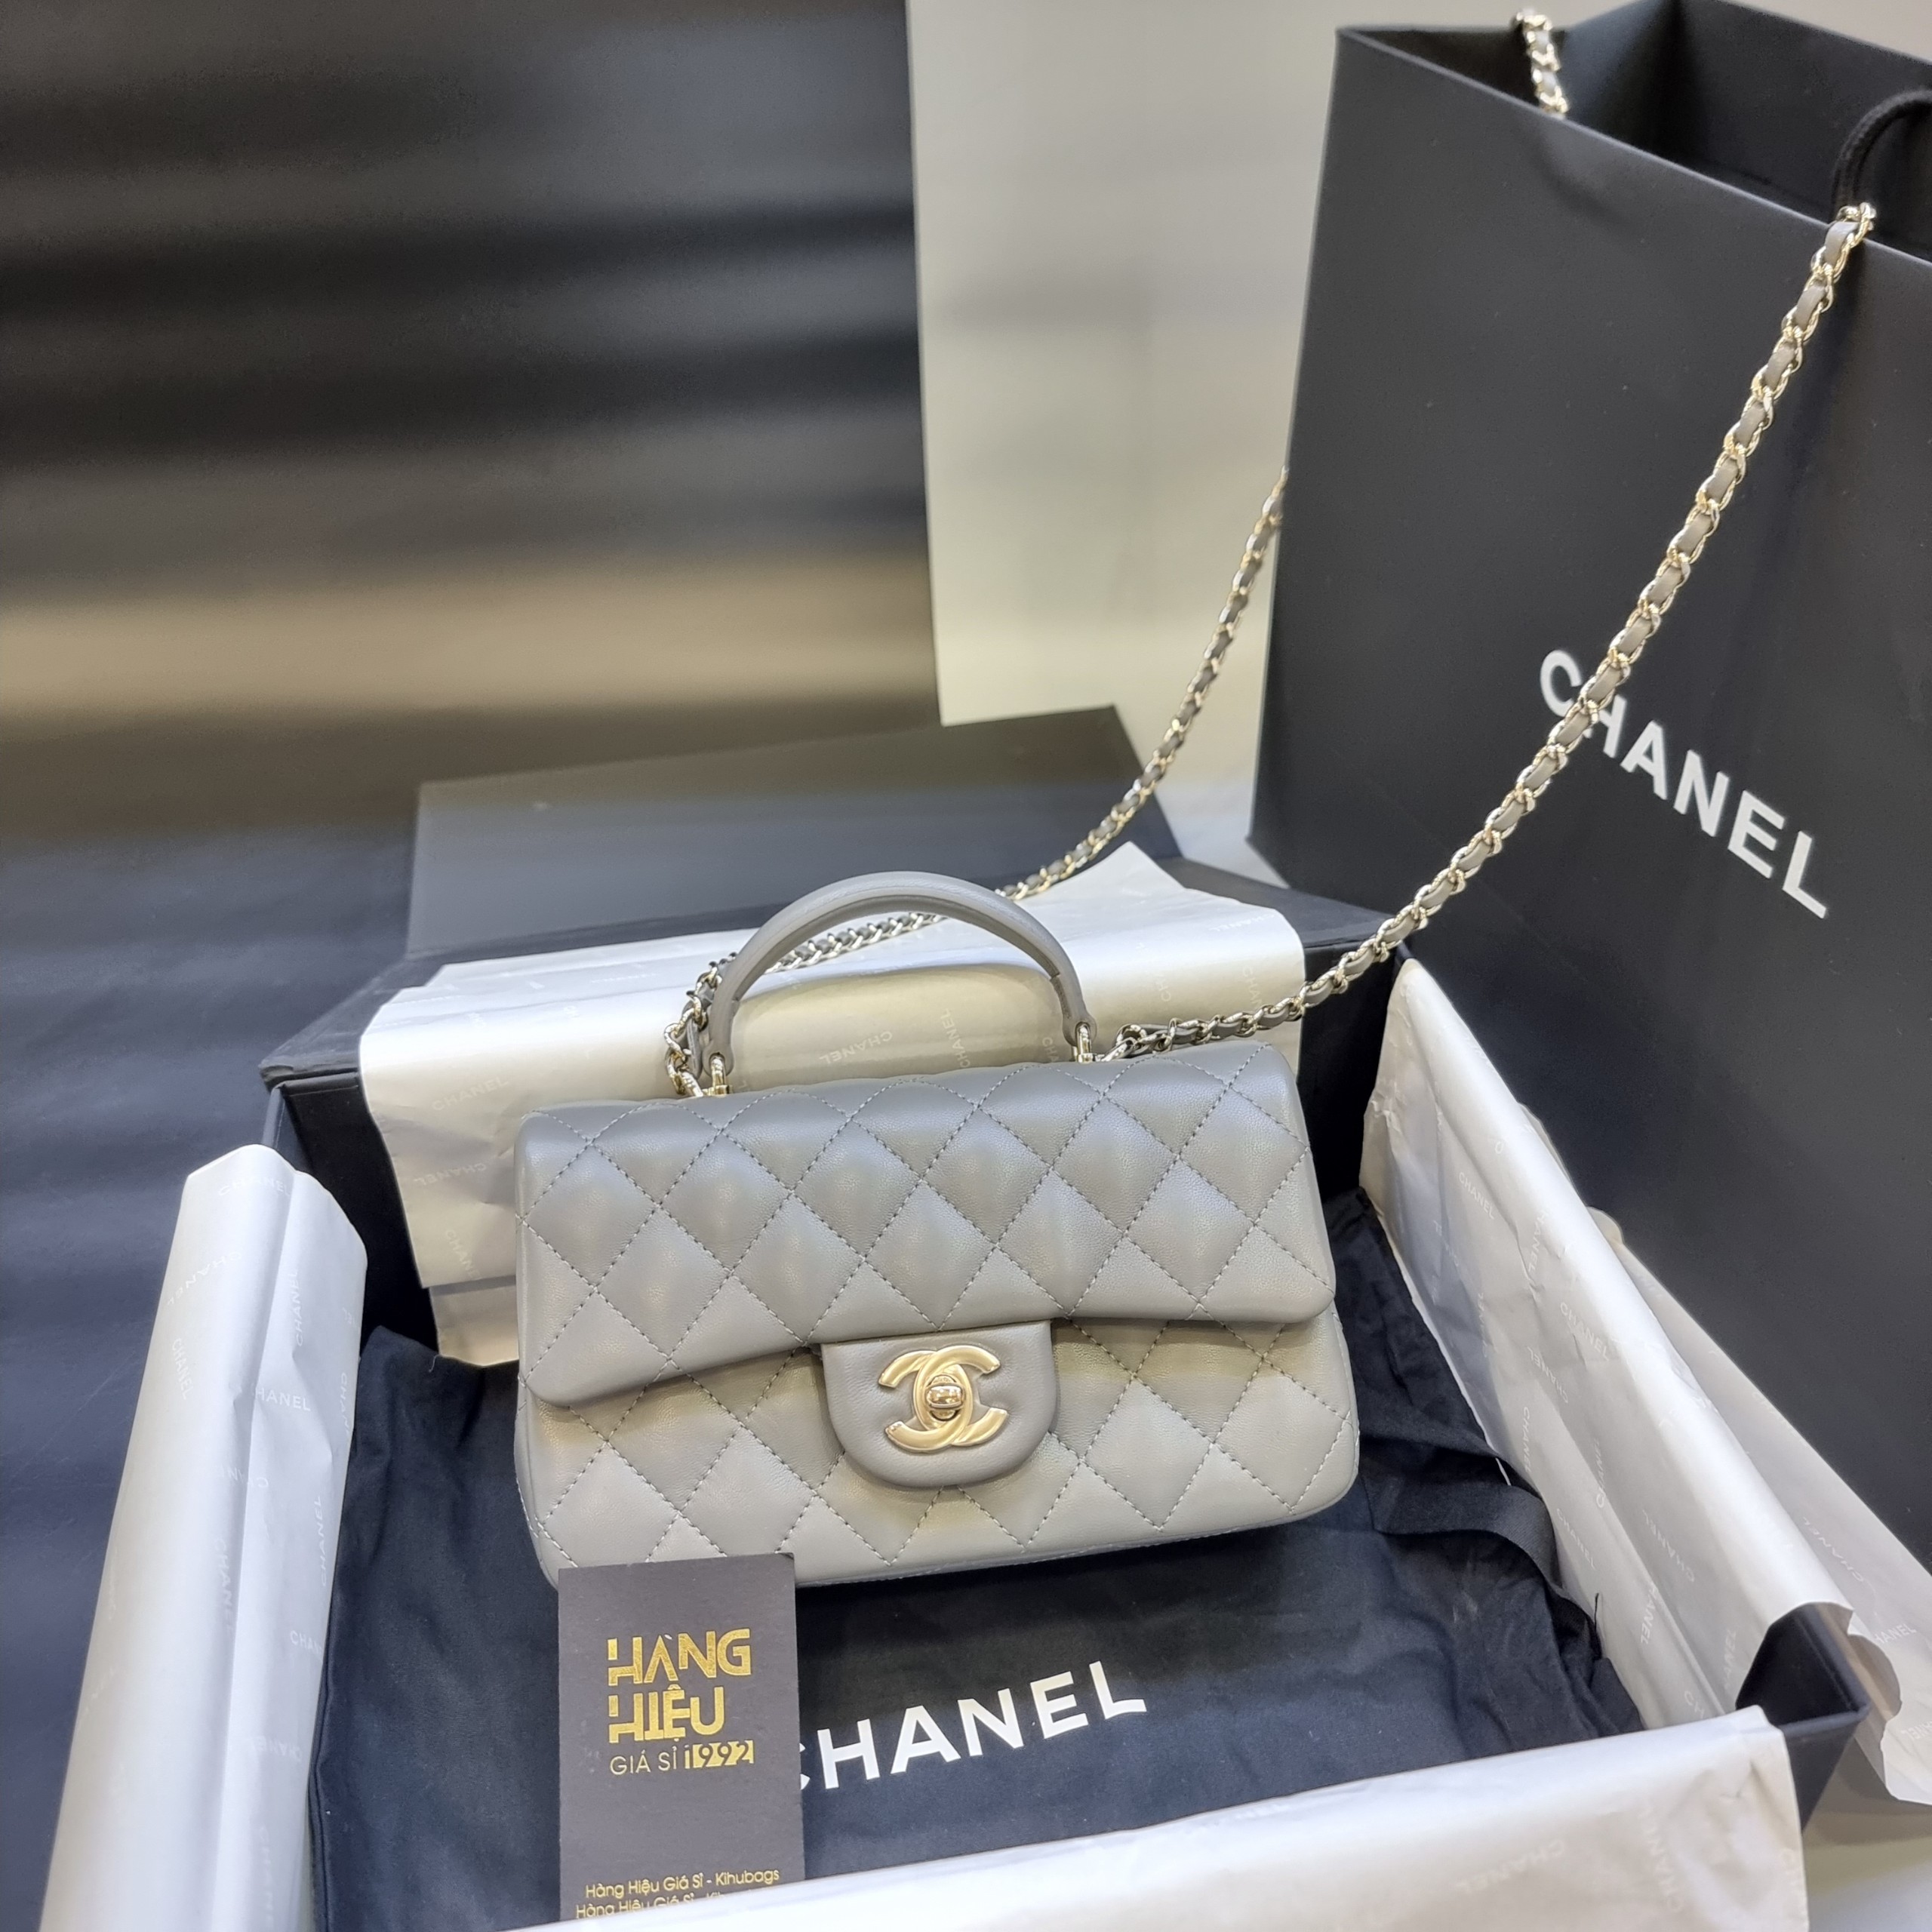 Túi Chanel mini bag Classic Flap siêu cấp màu đen